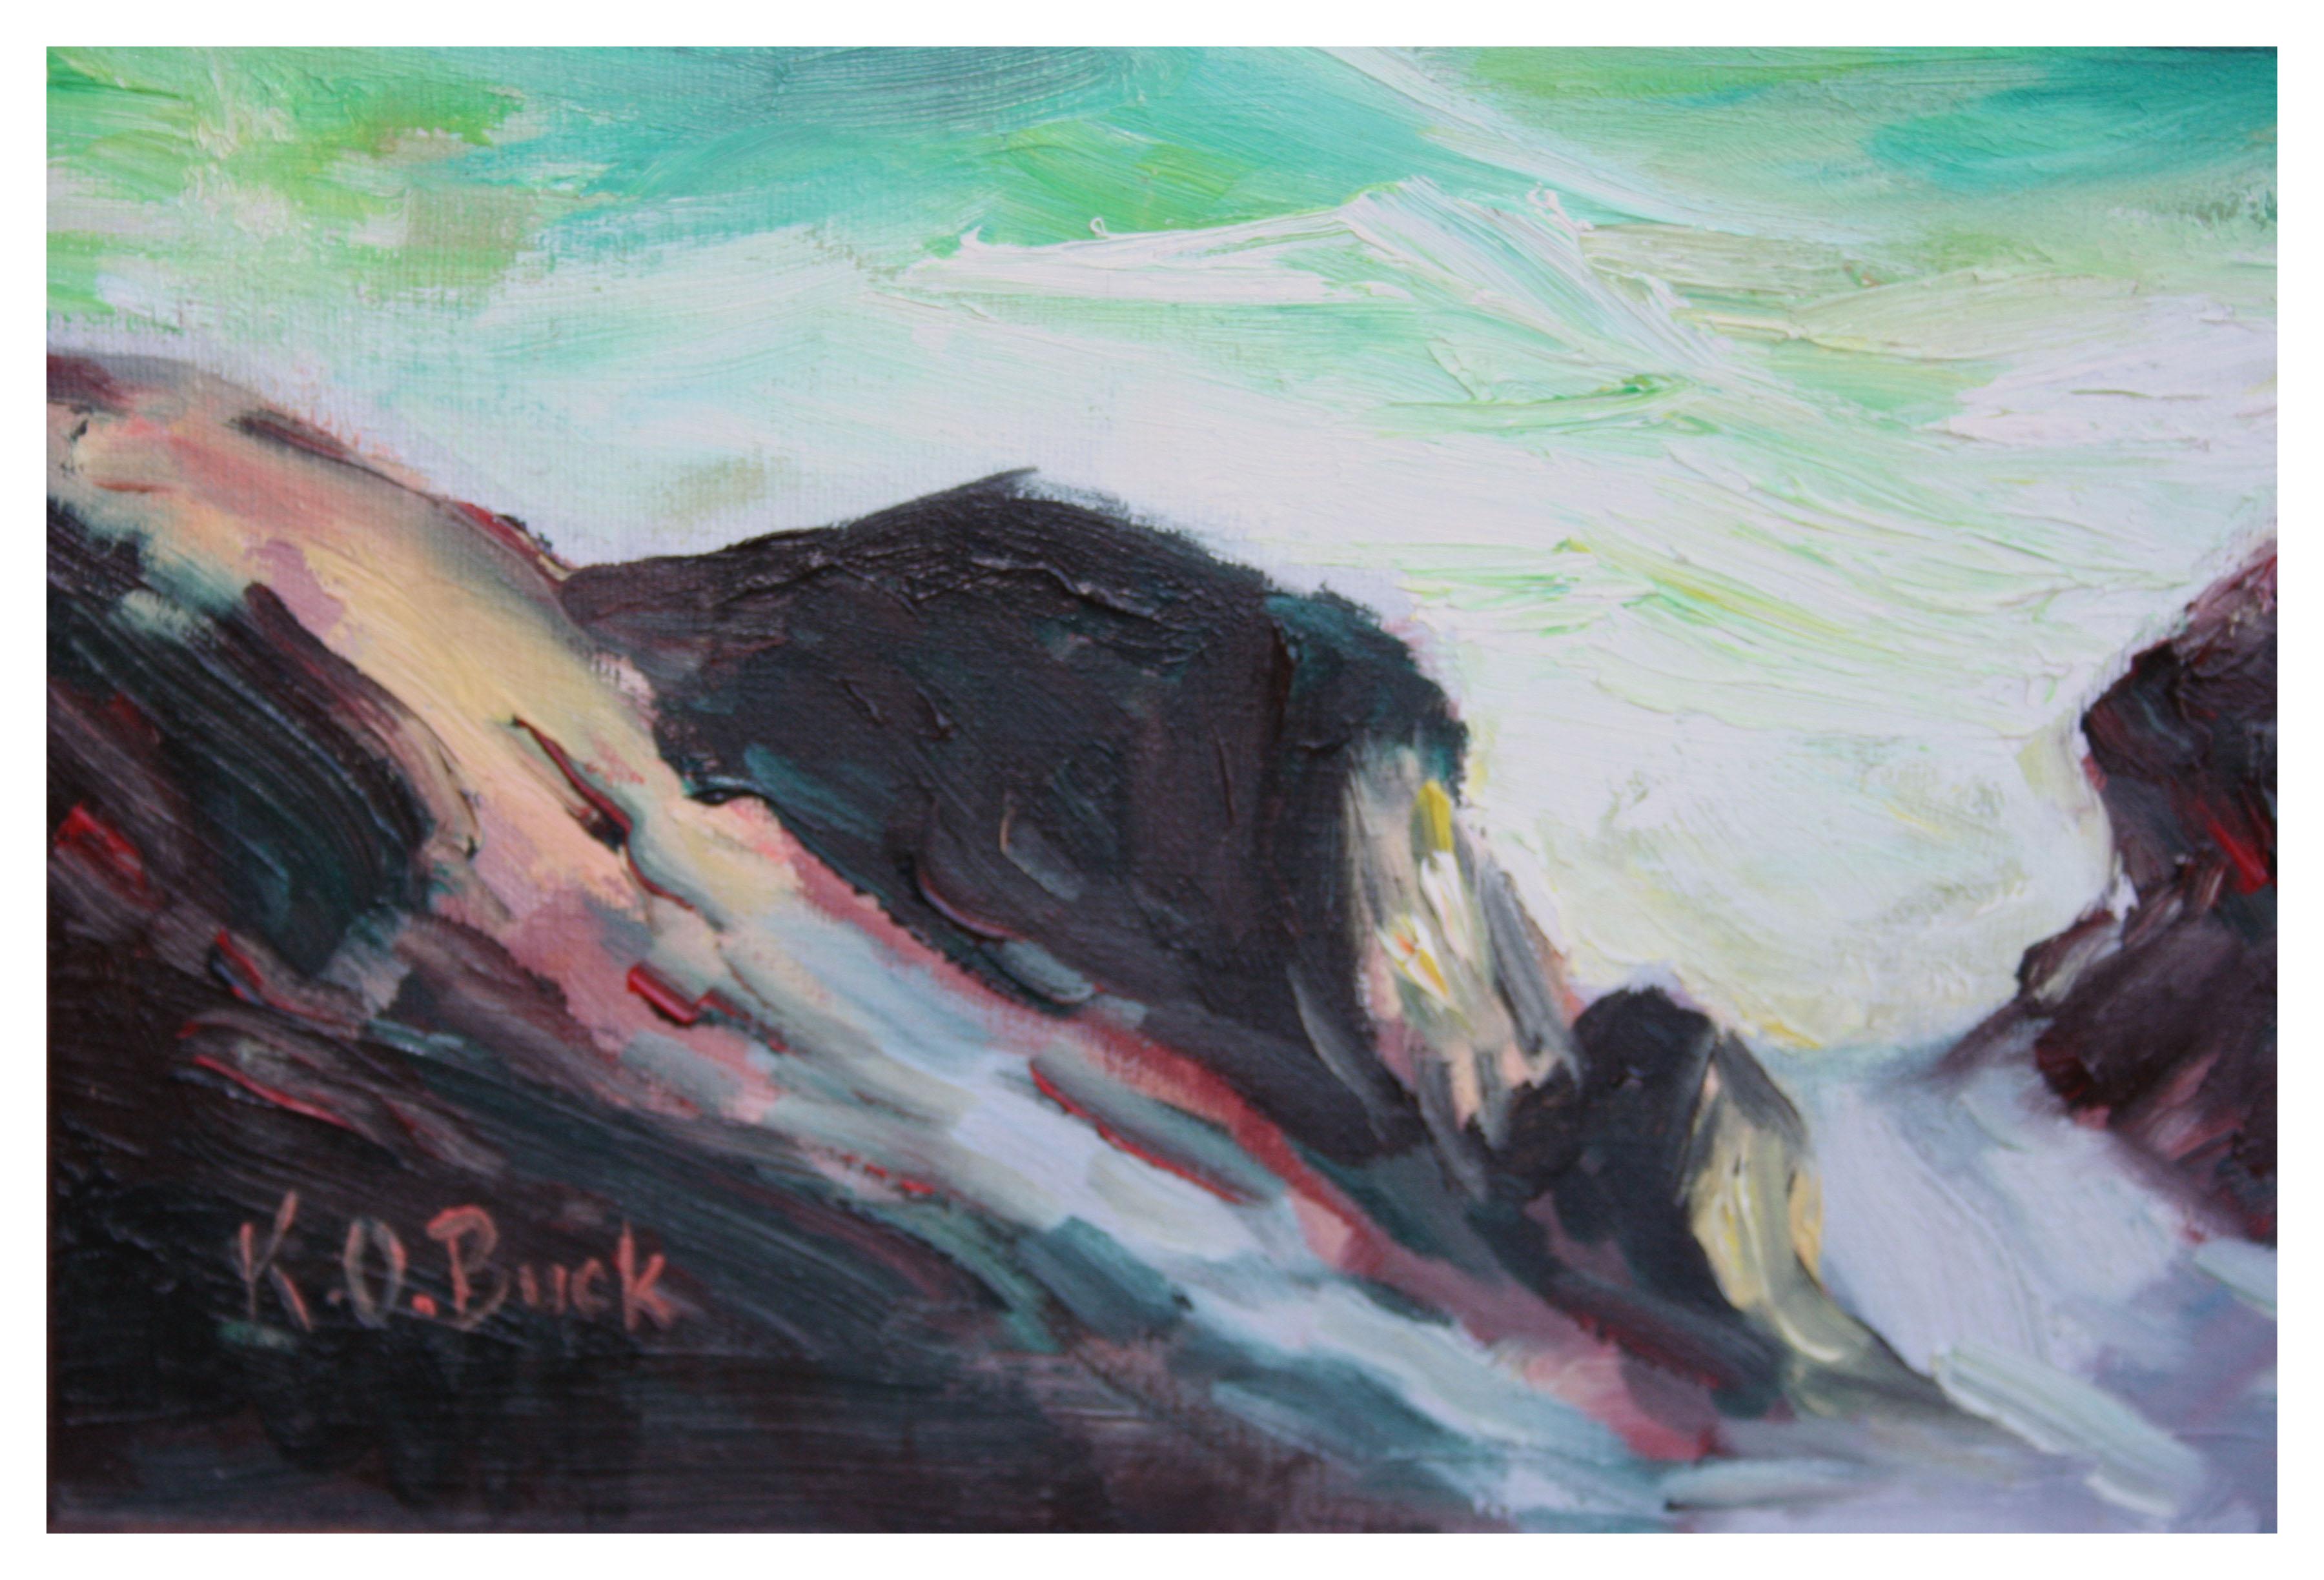 California Coastal Waves Seascape Original Öl auf Leinwand

Klassische kalifornische Meereslandschaft mit an den Felsen krachenden Wellen des Künstlers K. O. Buck (Amerikaner, 20. Jahrhundert) aus San Mateo. Transluzente Grün- und Blautöne